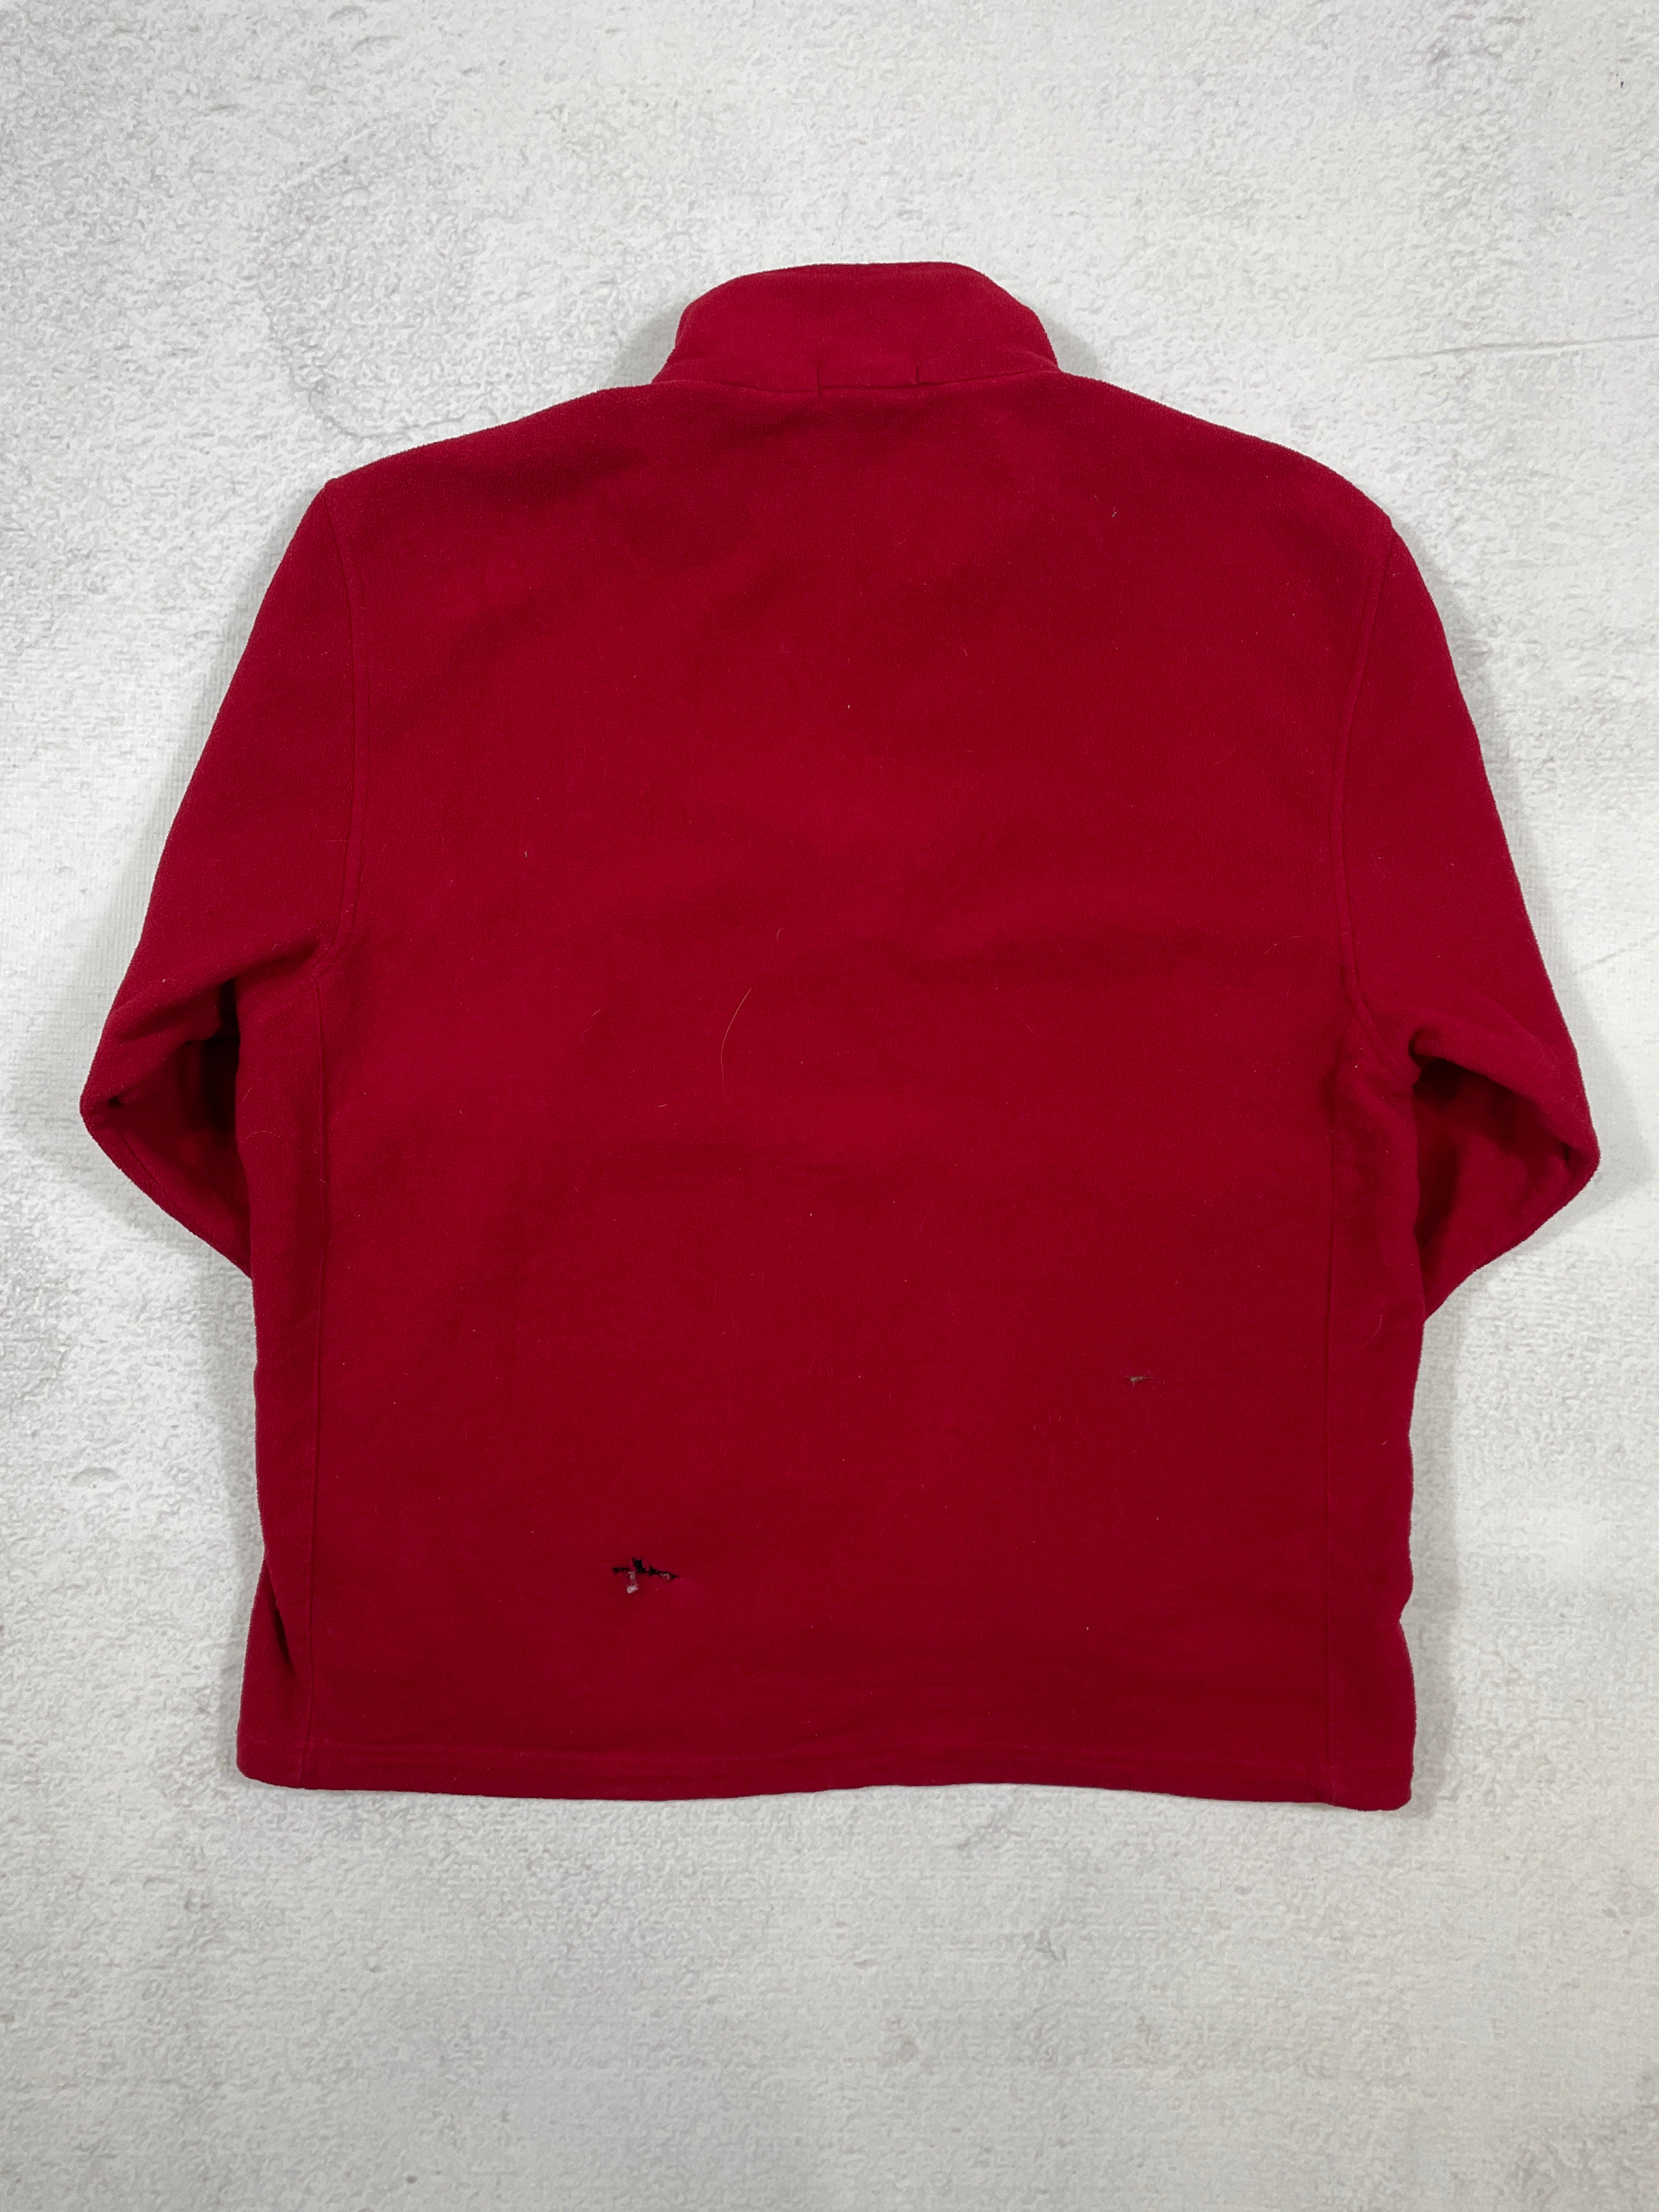 Vintage Nautica 1/4 Zip Fleece Sweatshirt - Men's Large